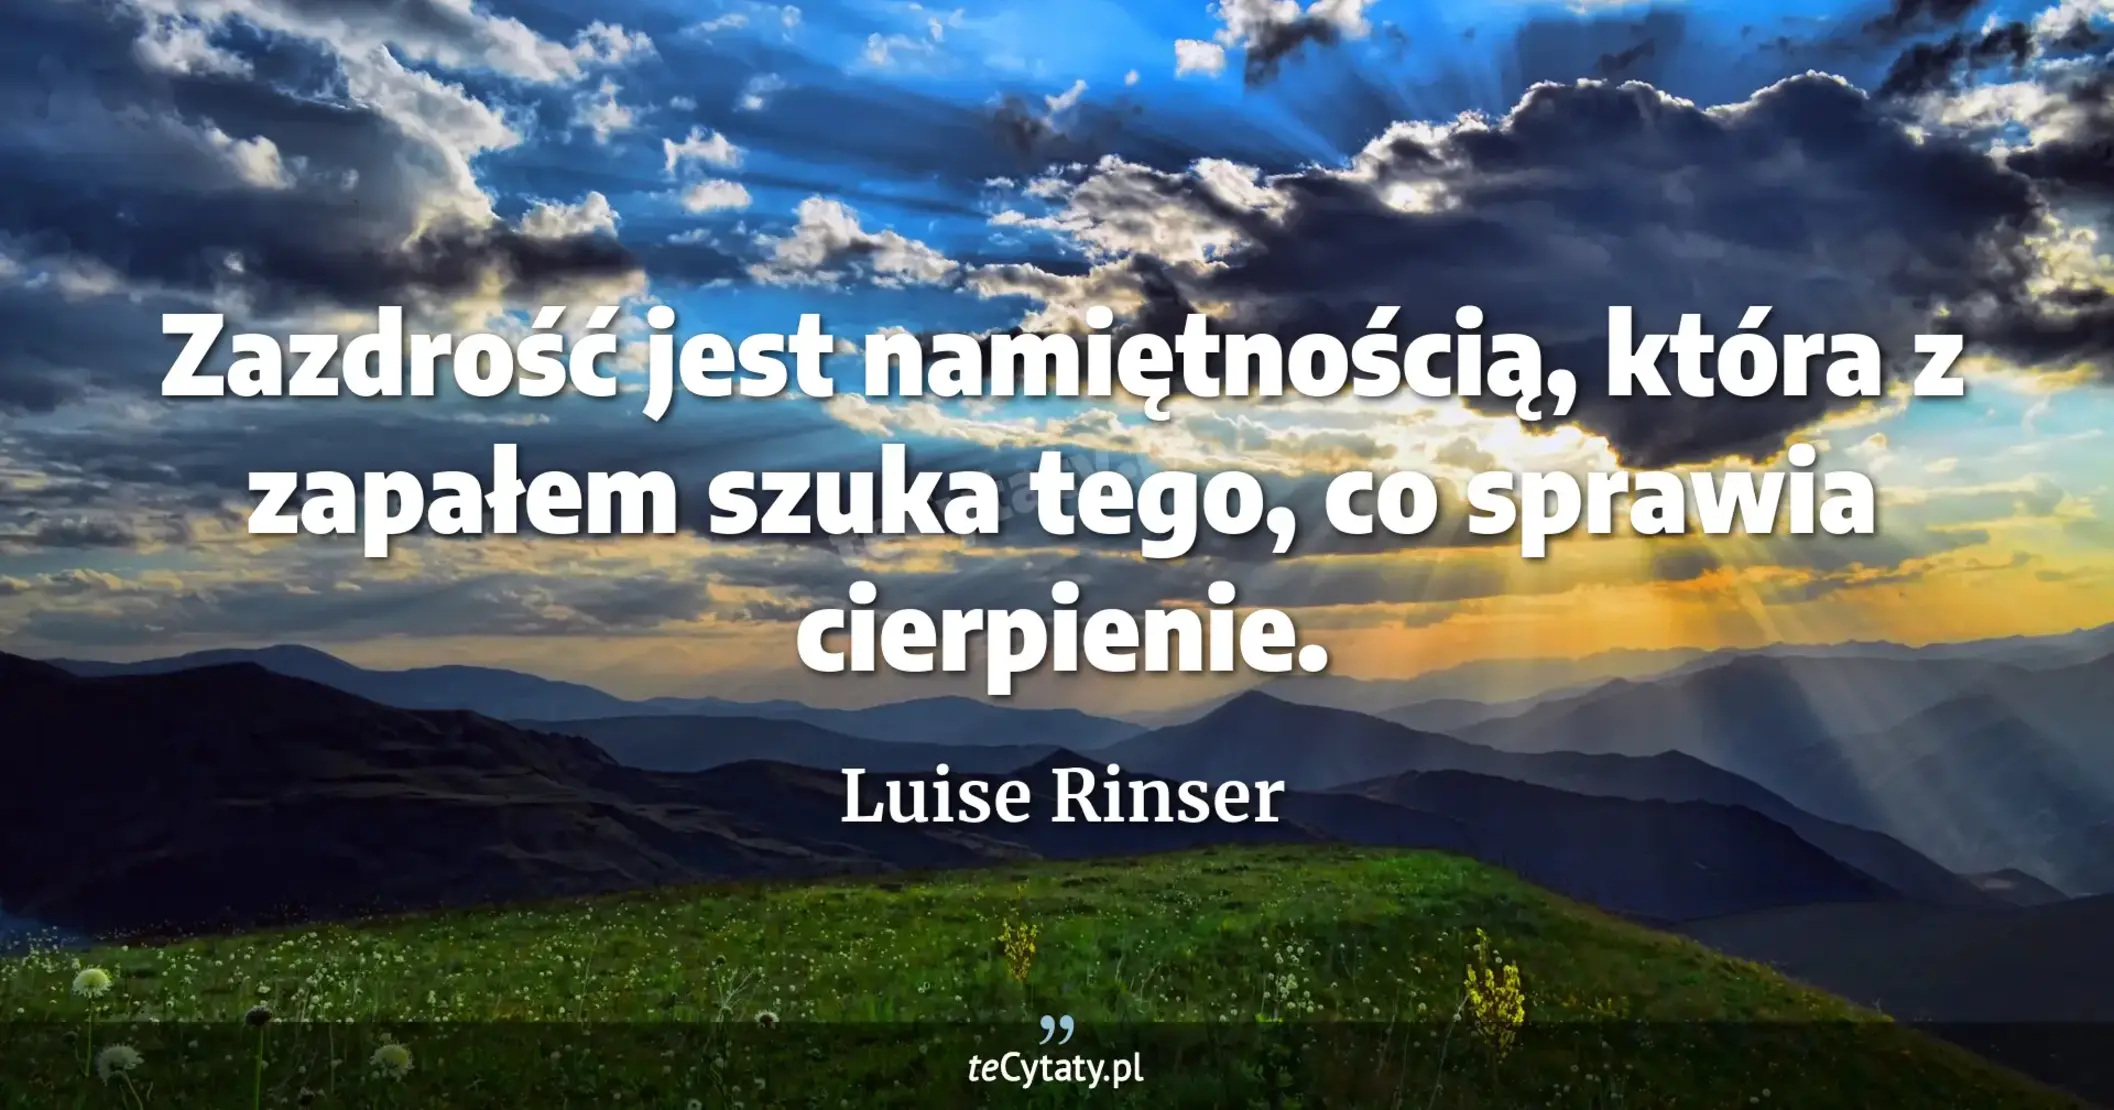 Zazdrość jest namiętnością, która z zapałem szuka tego, co sprawia cierpienie. - Luise Rinser